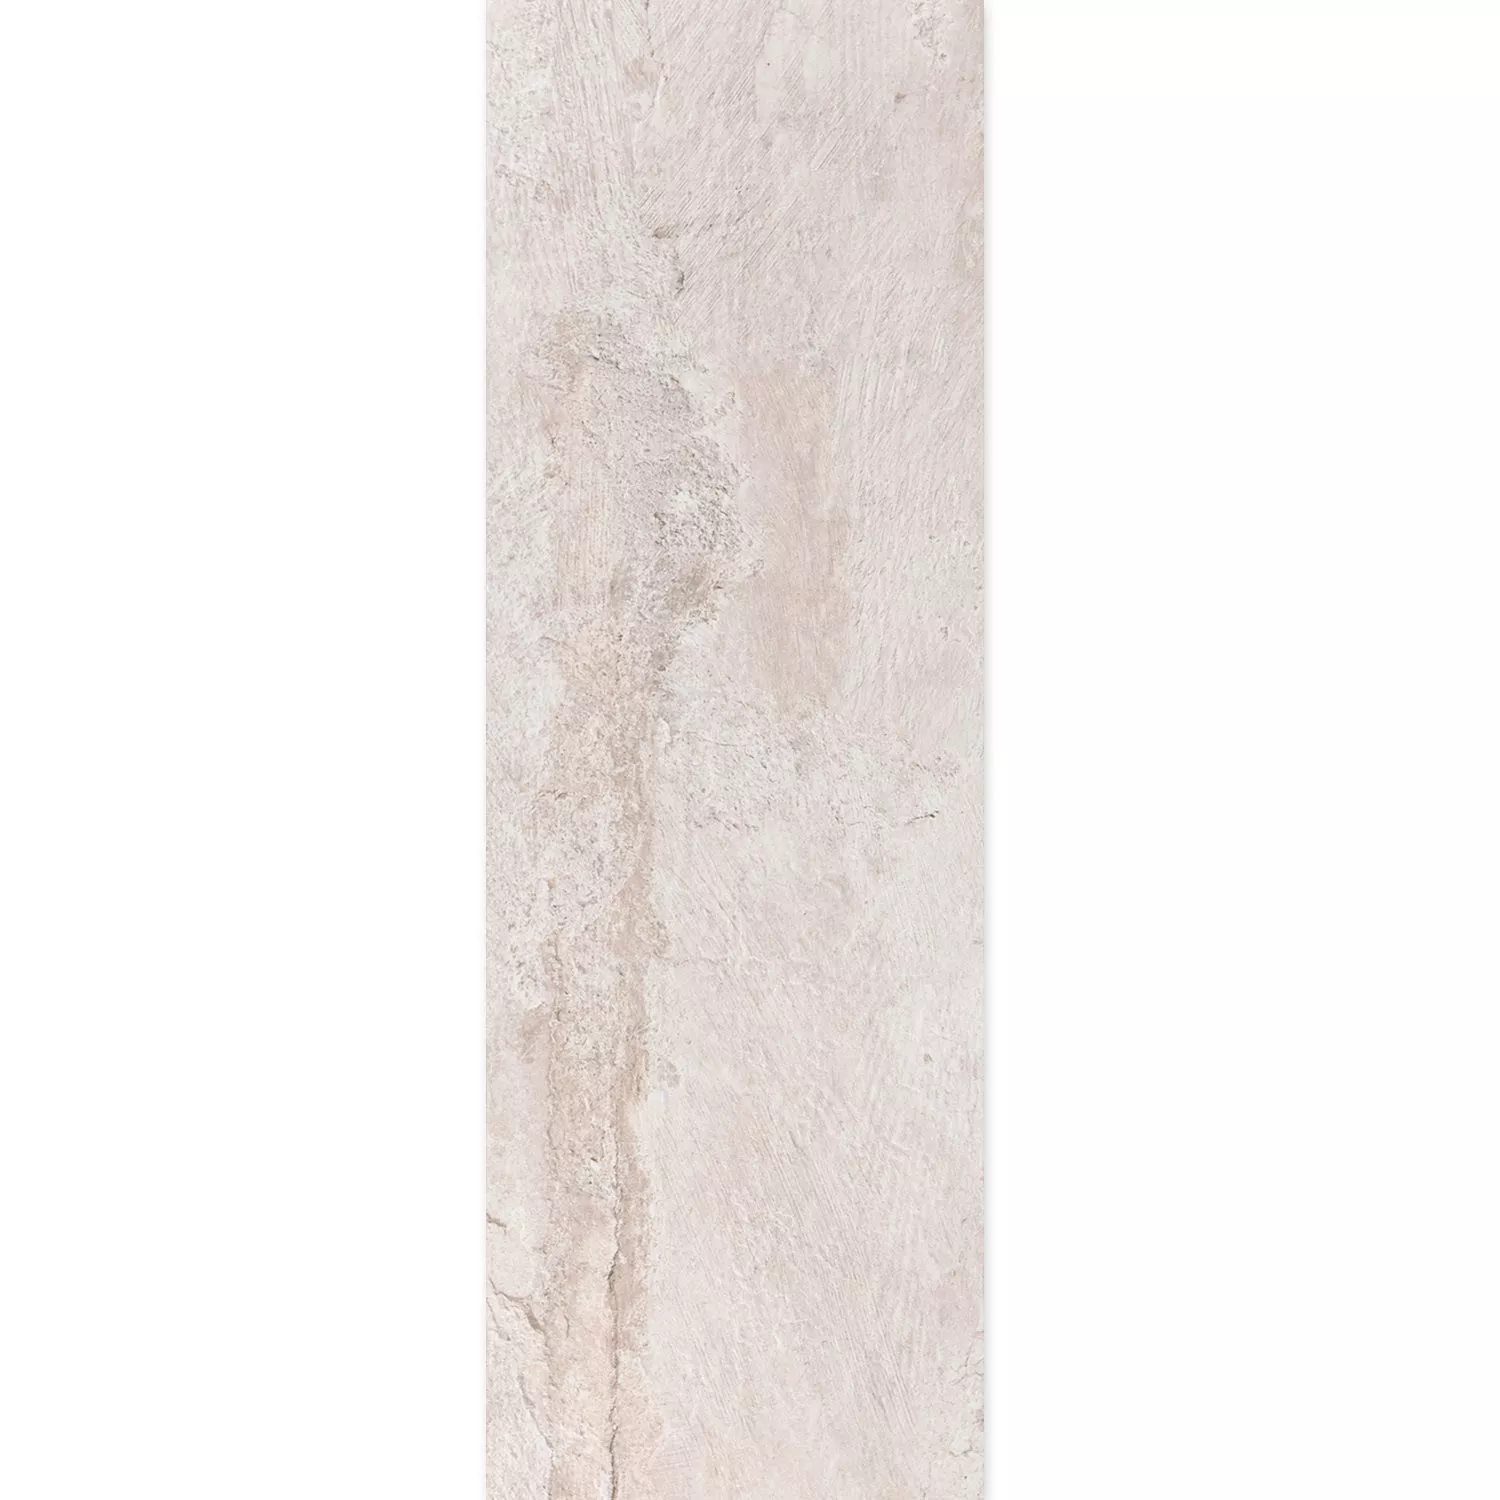 Podlahová Dlaždice Kámen Vzhled Polaris R10 Bílá 30x120cm